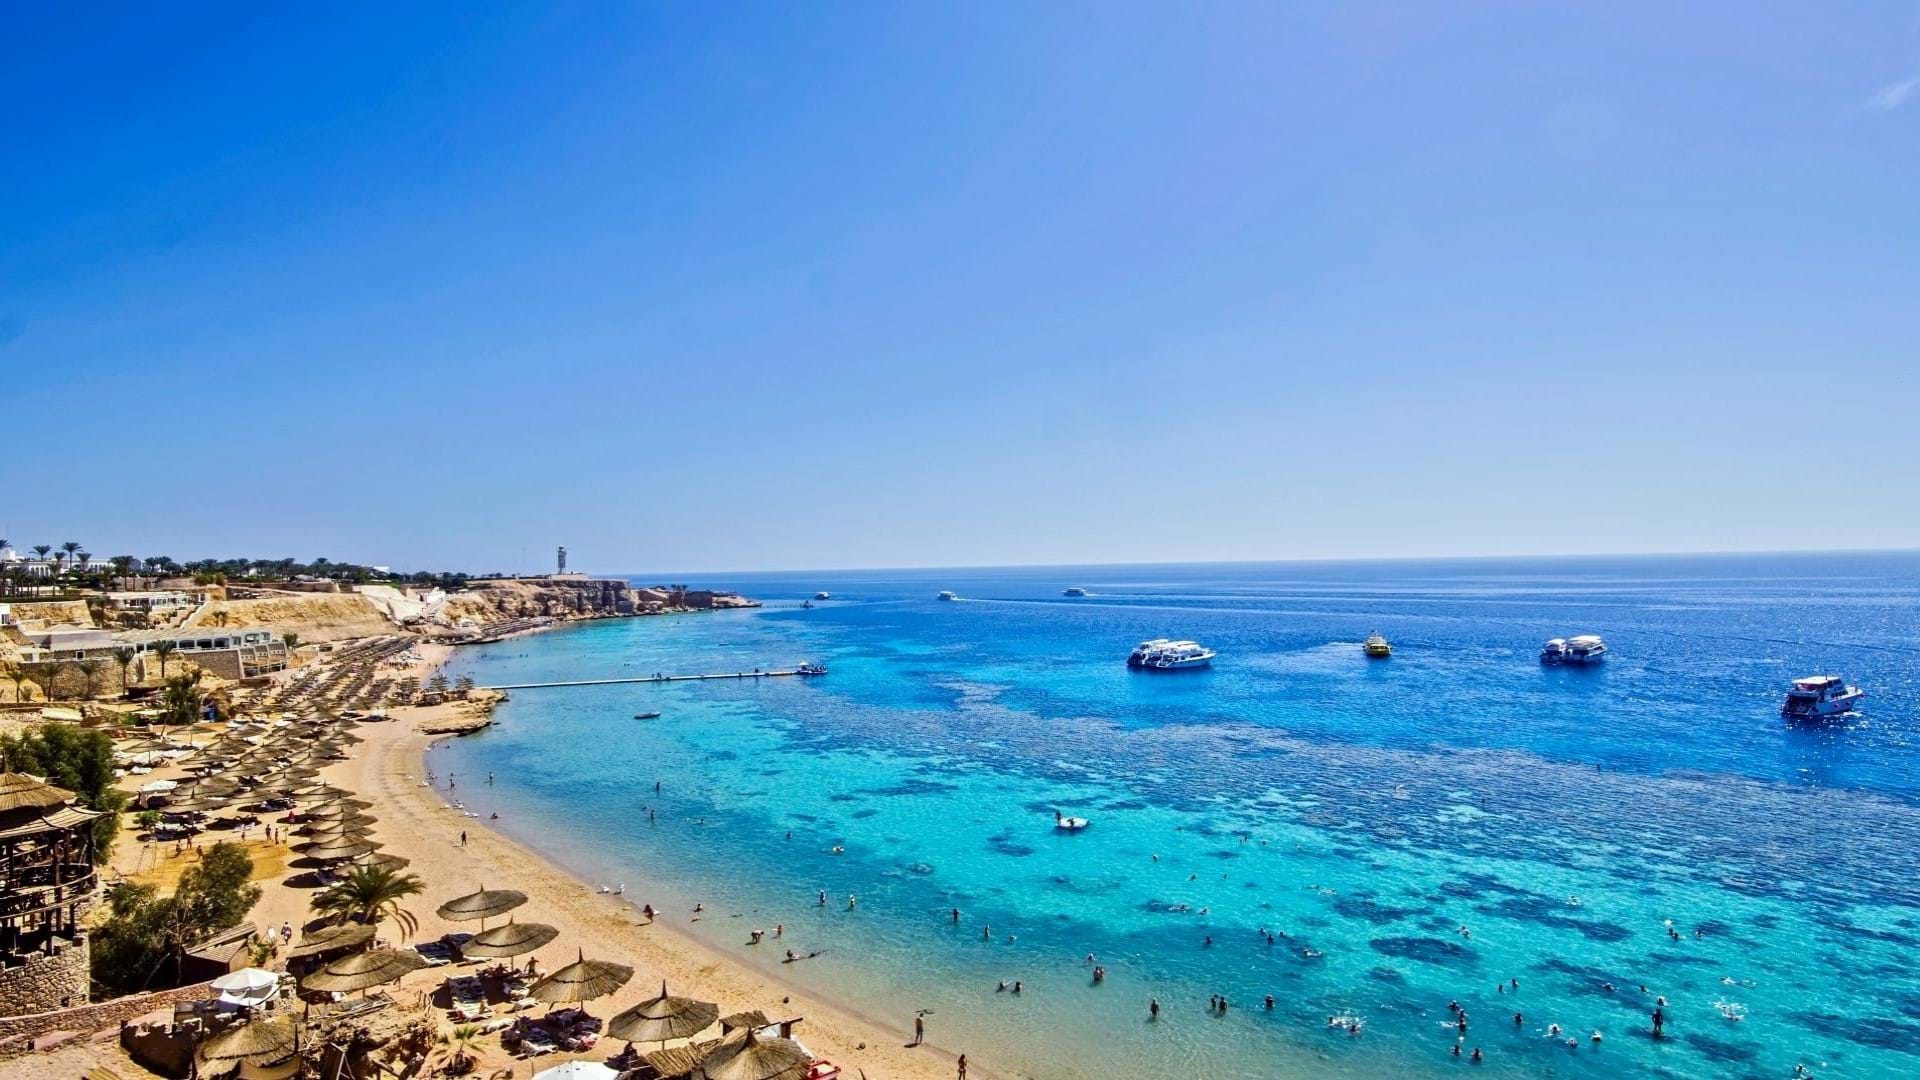 Prelepa plaža sa tirkiznom bojom mora i koralnim grebenom za ronjenje i snorkling u Egiptu.